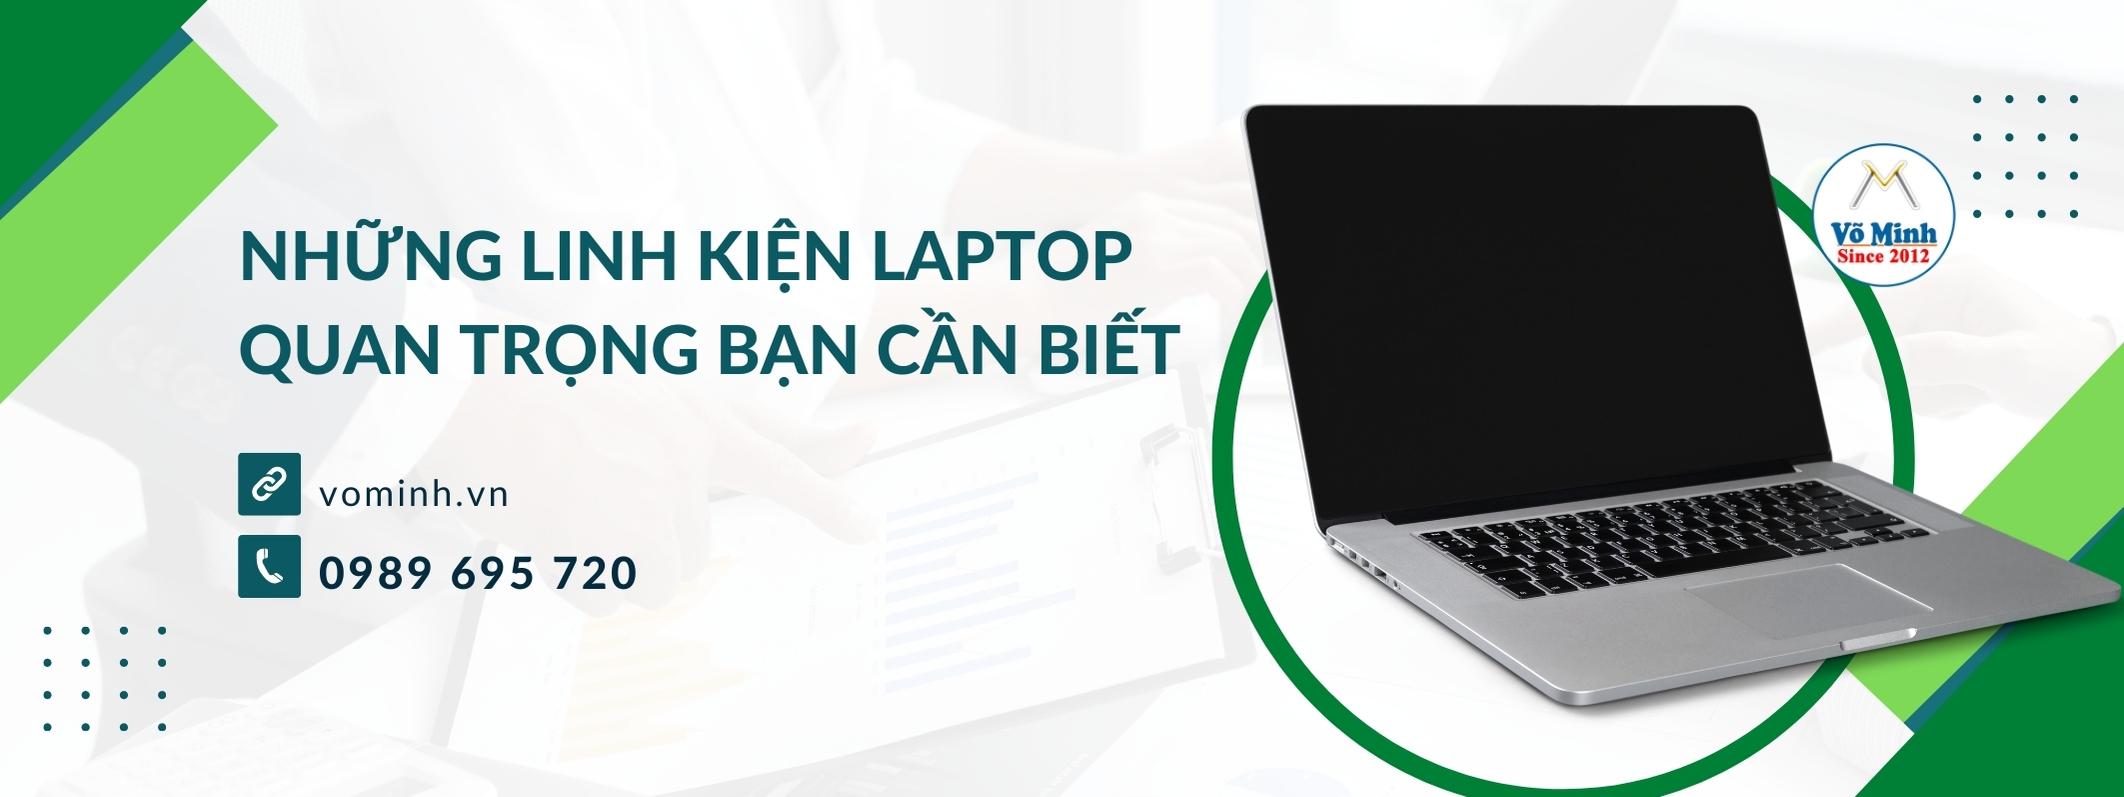 Những linh kiện laptop quan trọng bạn cần biết